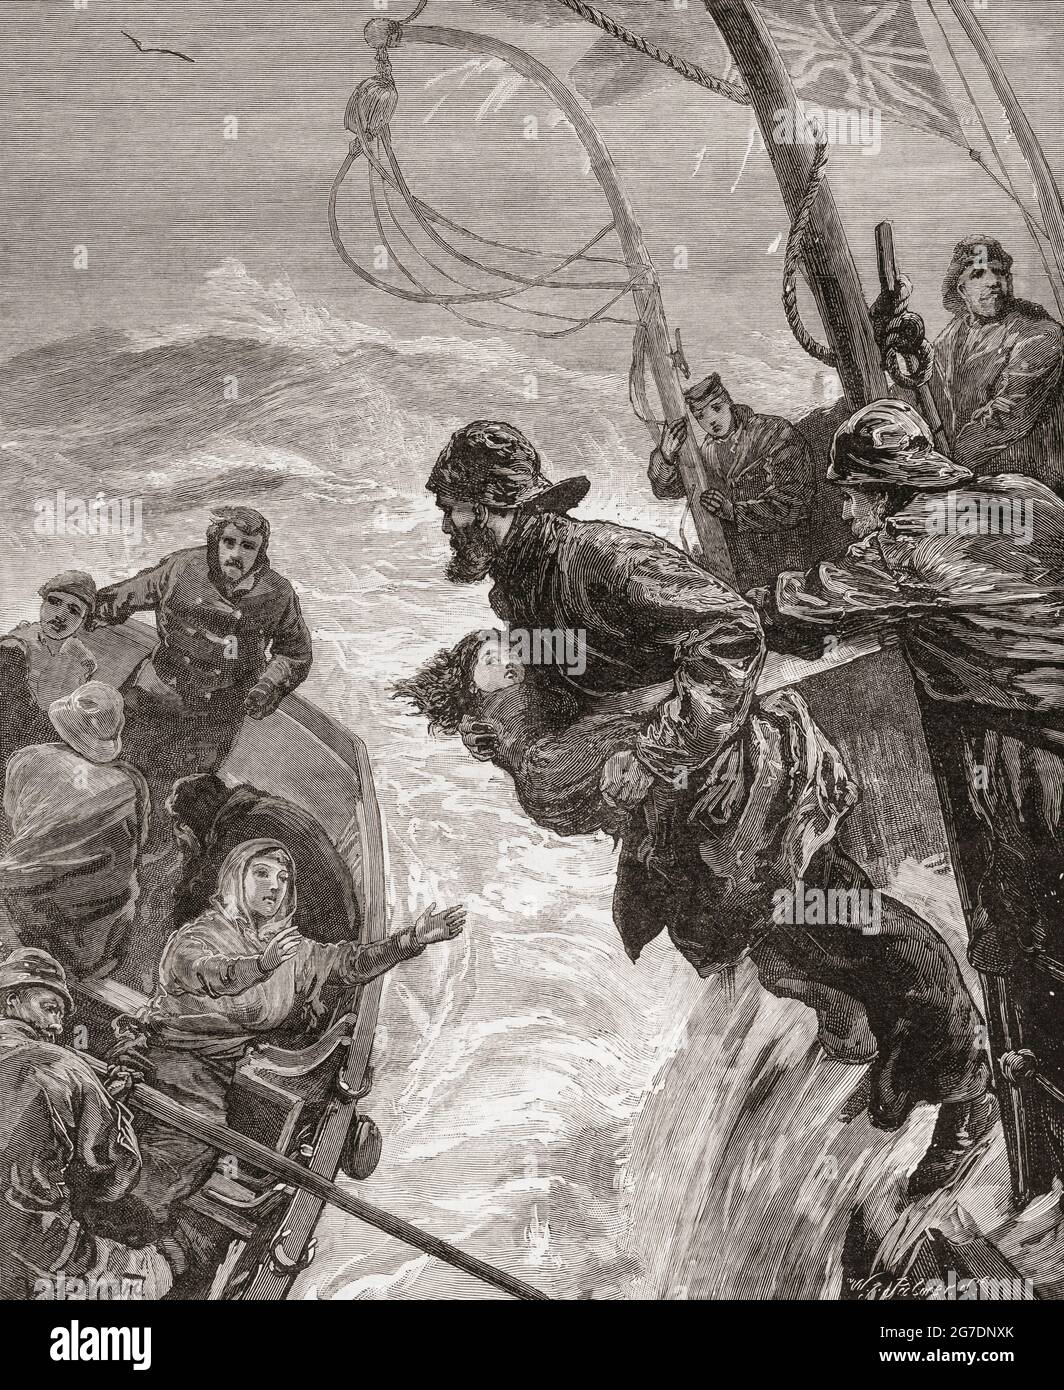 Der Verlust des Dampfschiffs Clan Macduff, das 1881 bei schlechtem Wetter vor Irland sank, mit dem Verlust von 32 Menschenleben. Ein Mitglied der Besatzung versucht, ein Kind auf ihre Mutter zu werfen, die in einem Rettungsboot wartet. Aus der London Illustrated News, veröffentlicht 1881. Stockfoto